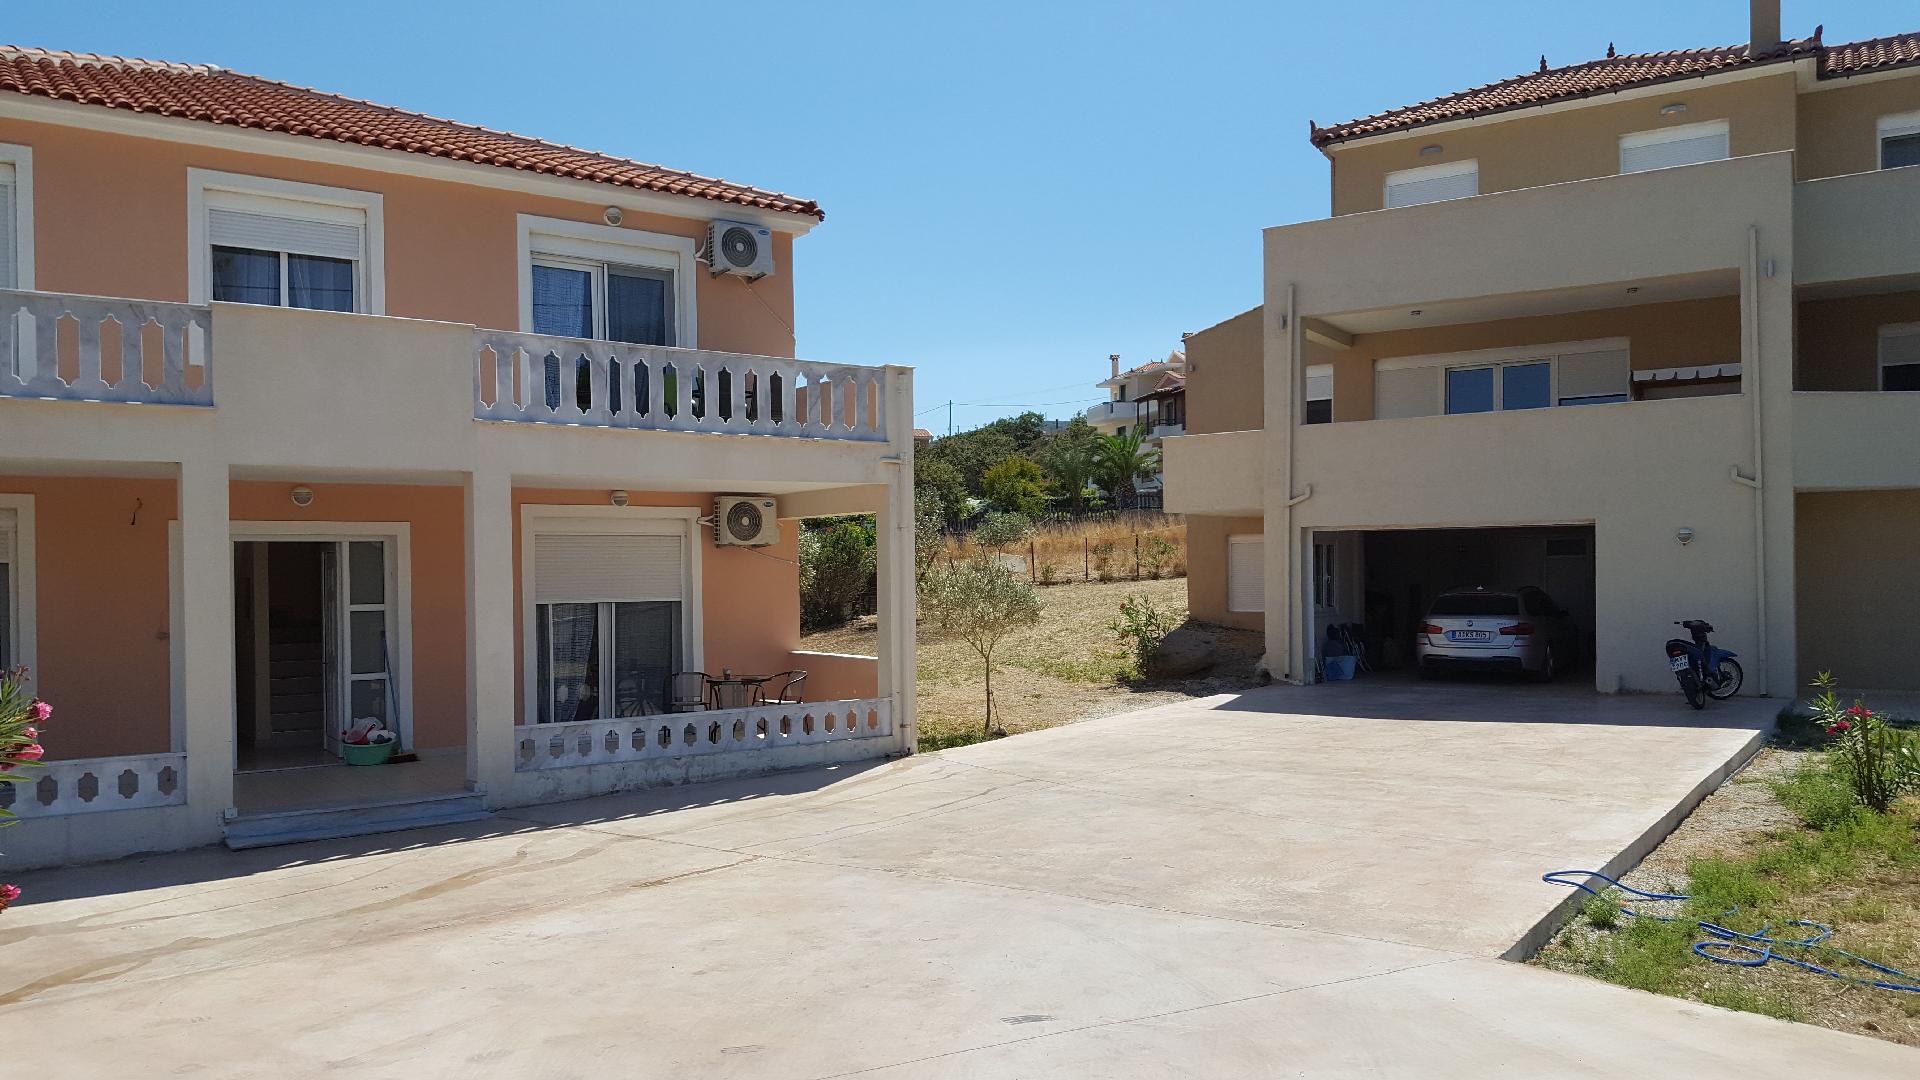 Ferienwohnung für 4 Personen ca. 55 m² i Ferienhaus in Griechenland